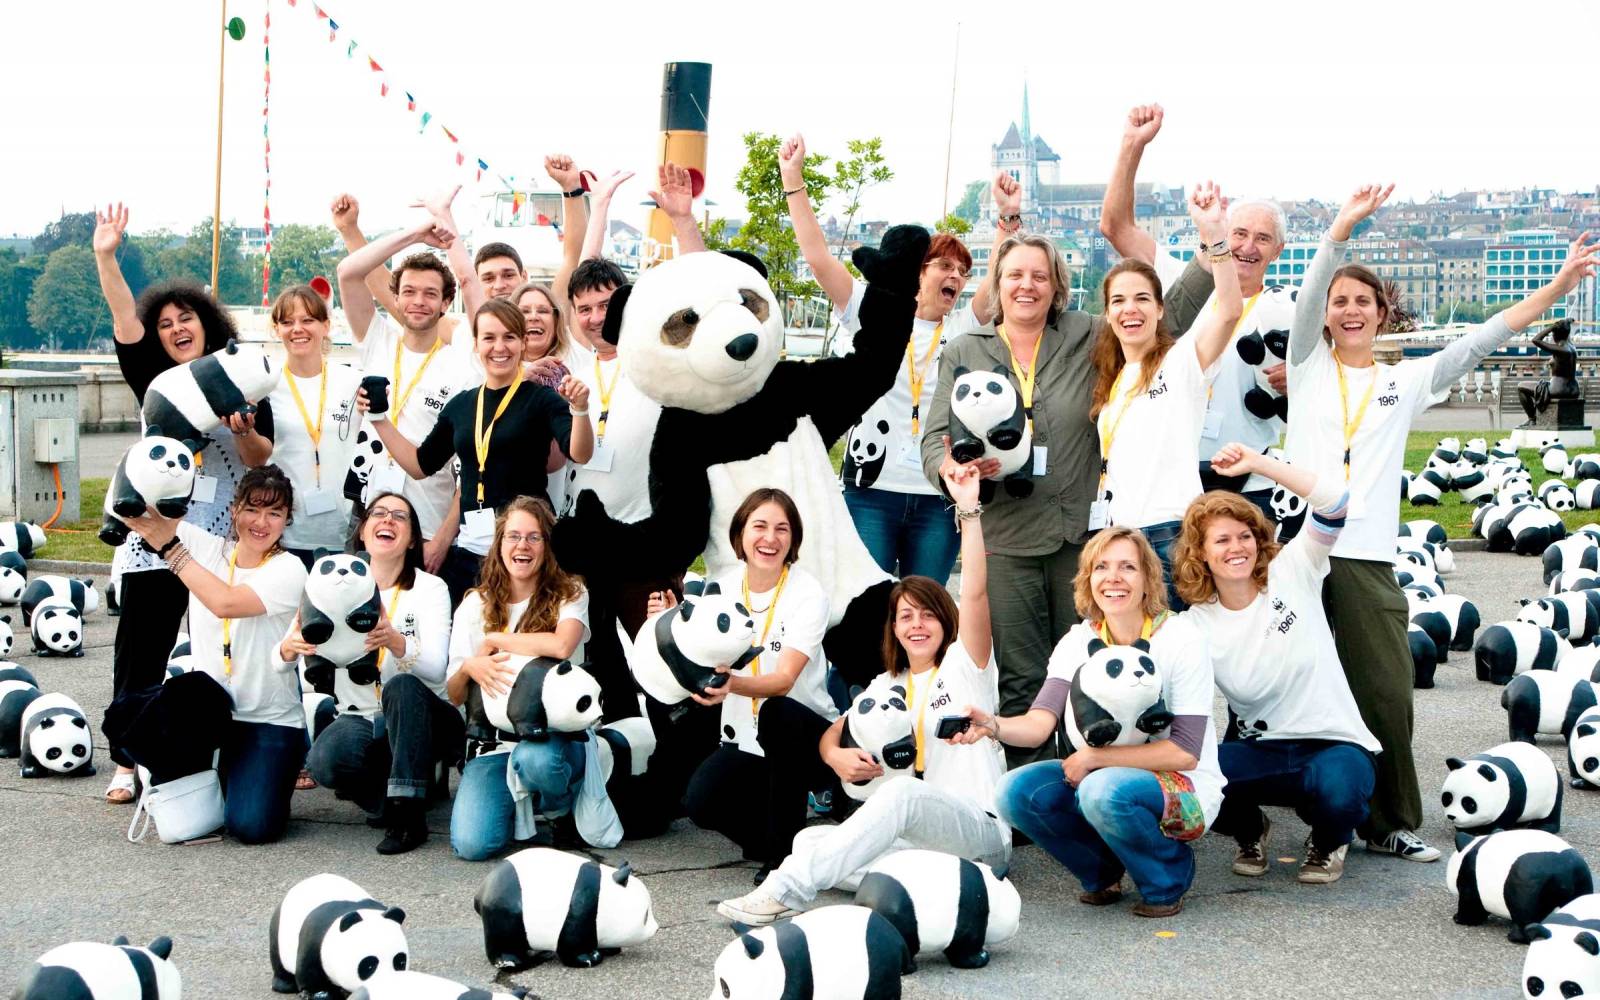 Zu seinem 50-jährigen Jubiläum stellt der WWF Schweiz 1600 Pandas aus Pappmaché aus.